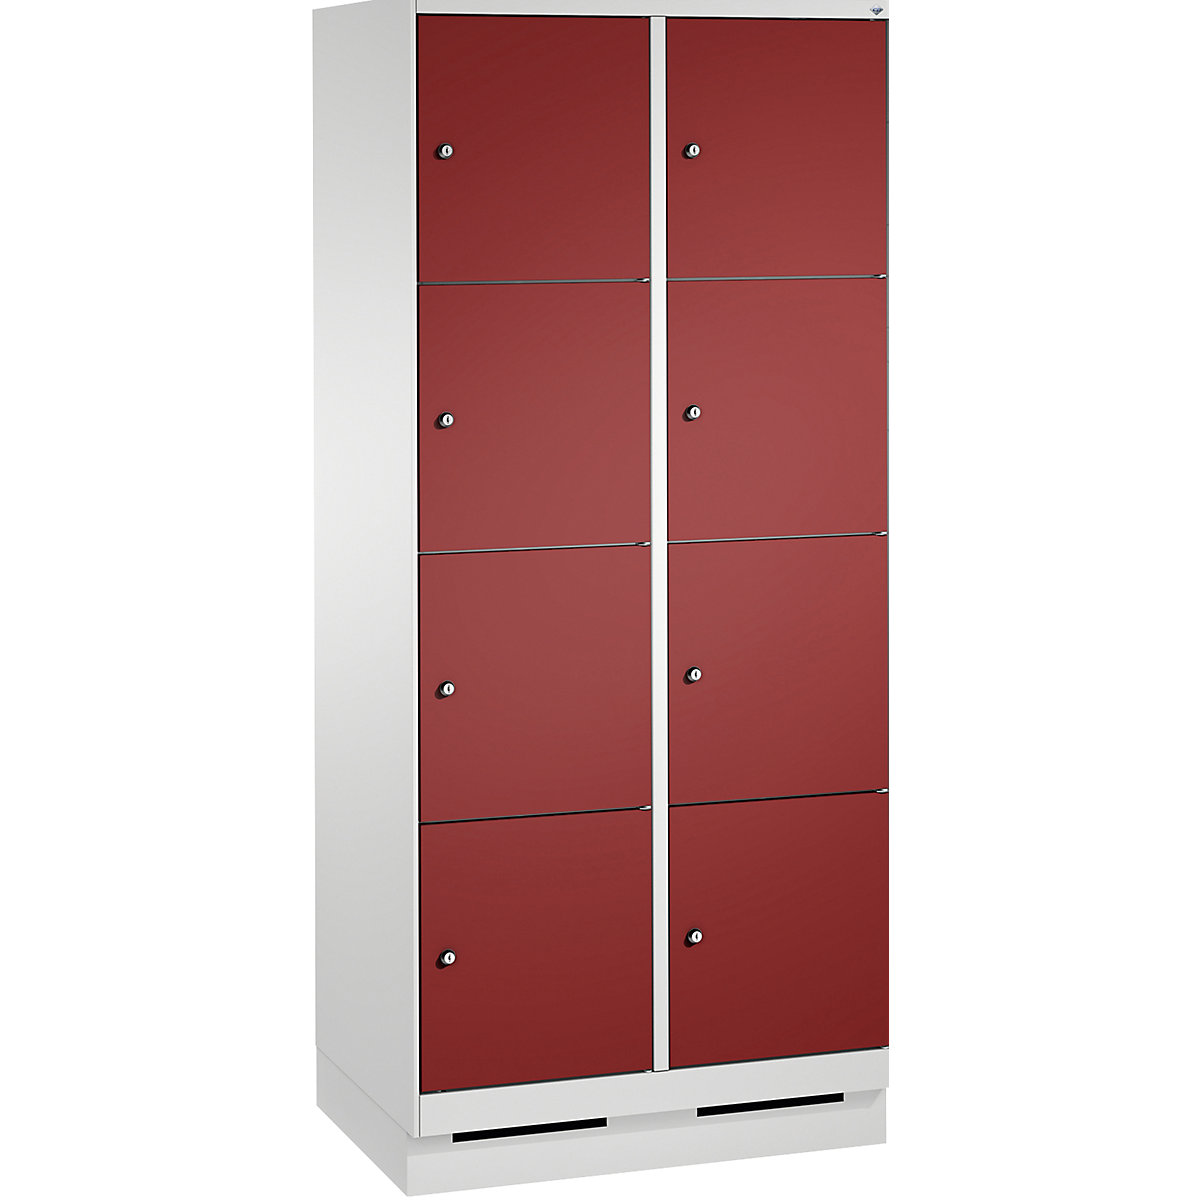 Armoire à casiers sur socle EVOLO – C+P, 2 compartiments, 4 casiers chacun, largeur compartiments 400 mm, gris clair / rouge rubis-11